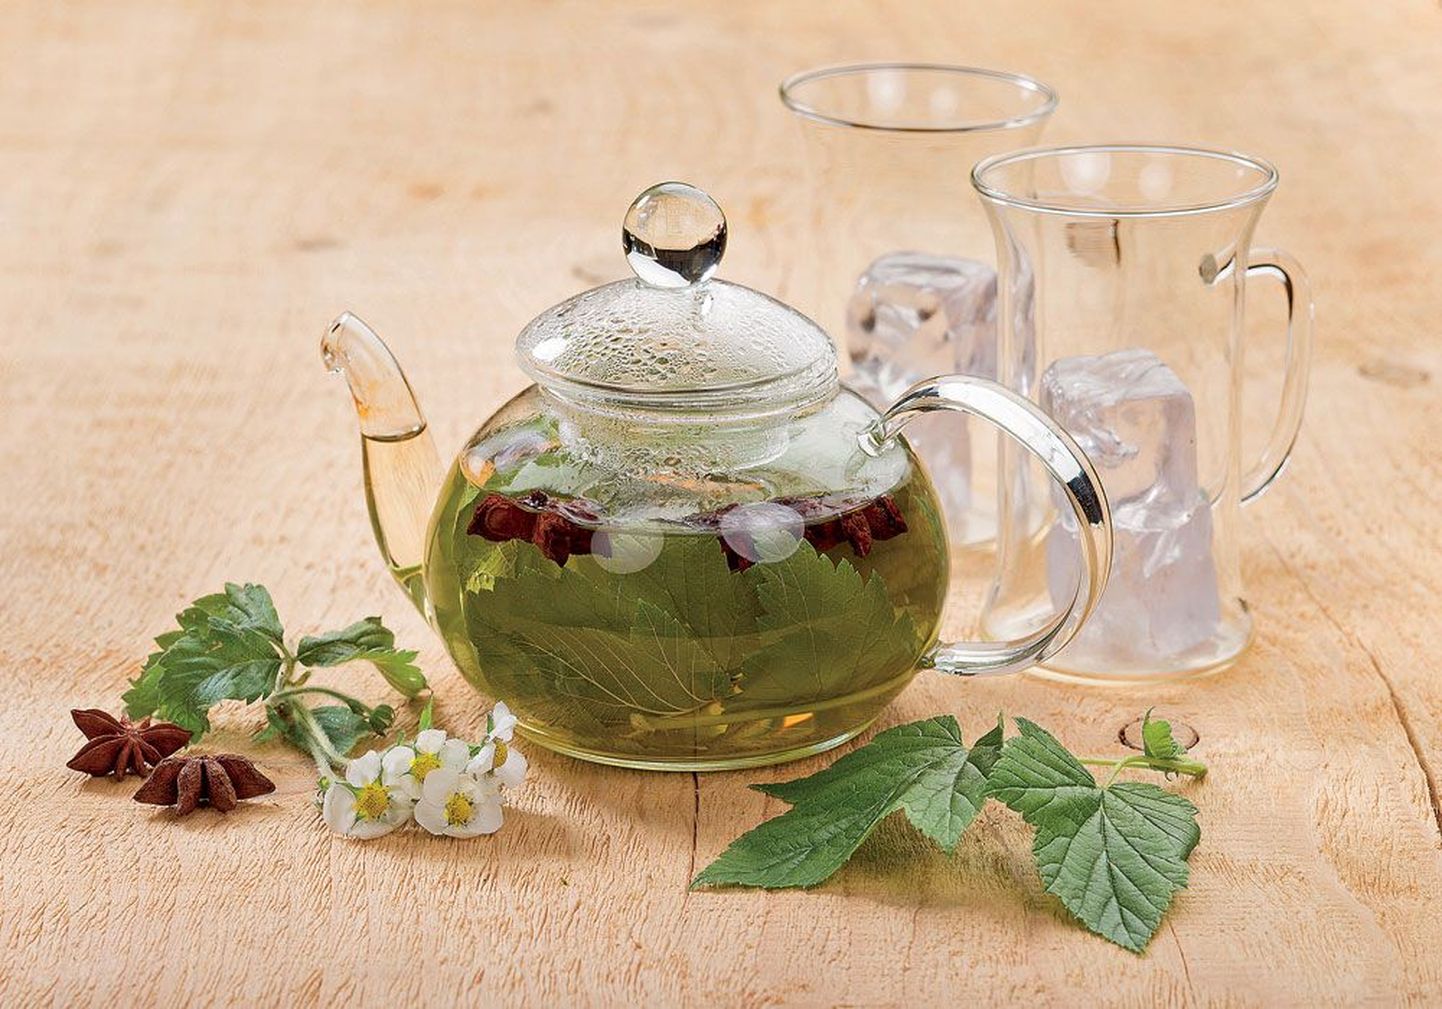 Чай можно заварить в термосе и горячим разлить по стаканам со льдом.